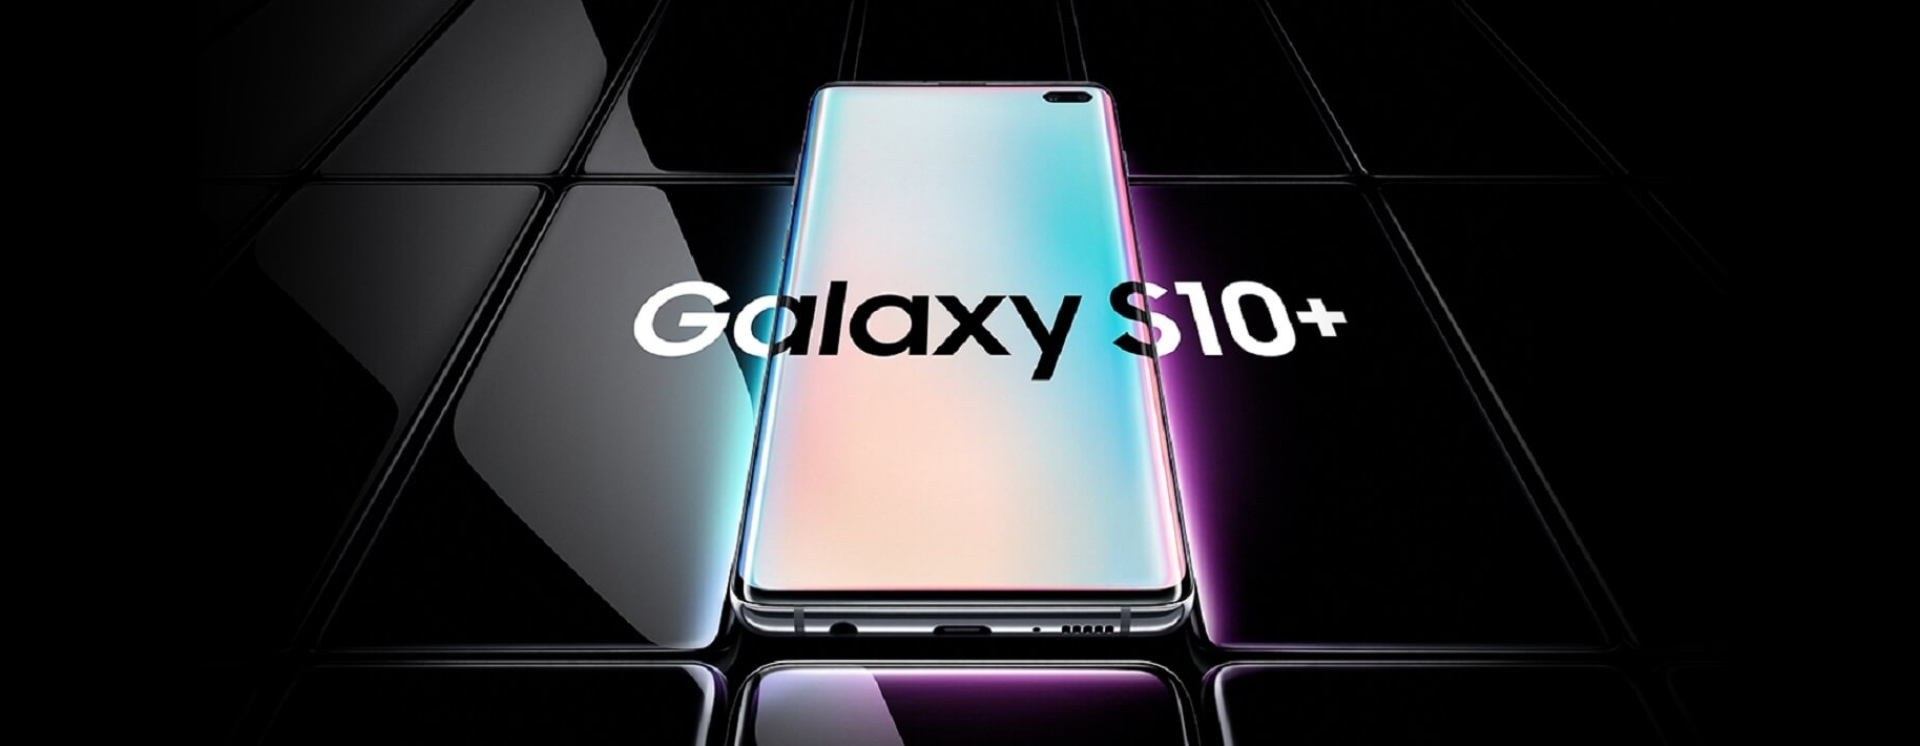 Τα 5 features που φέρνουν το Samsung Galaxy S10 στην κορυφή